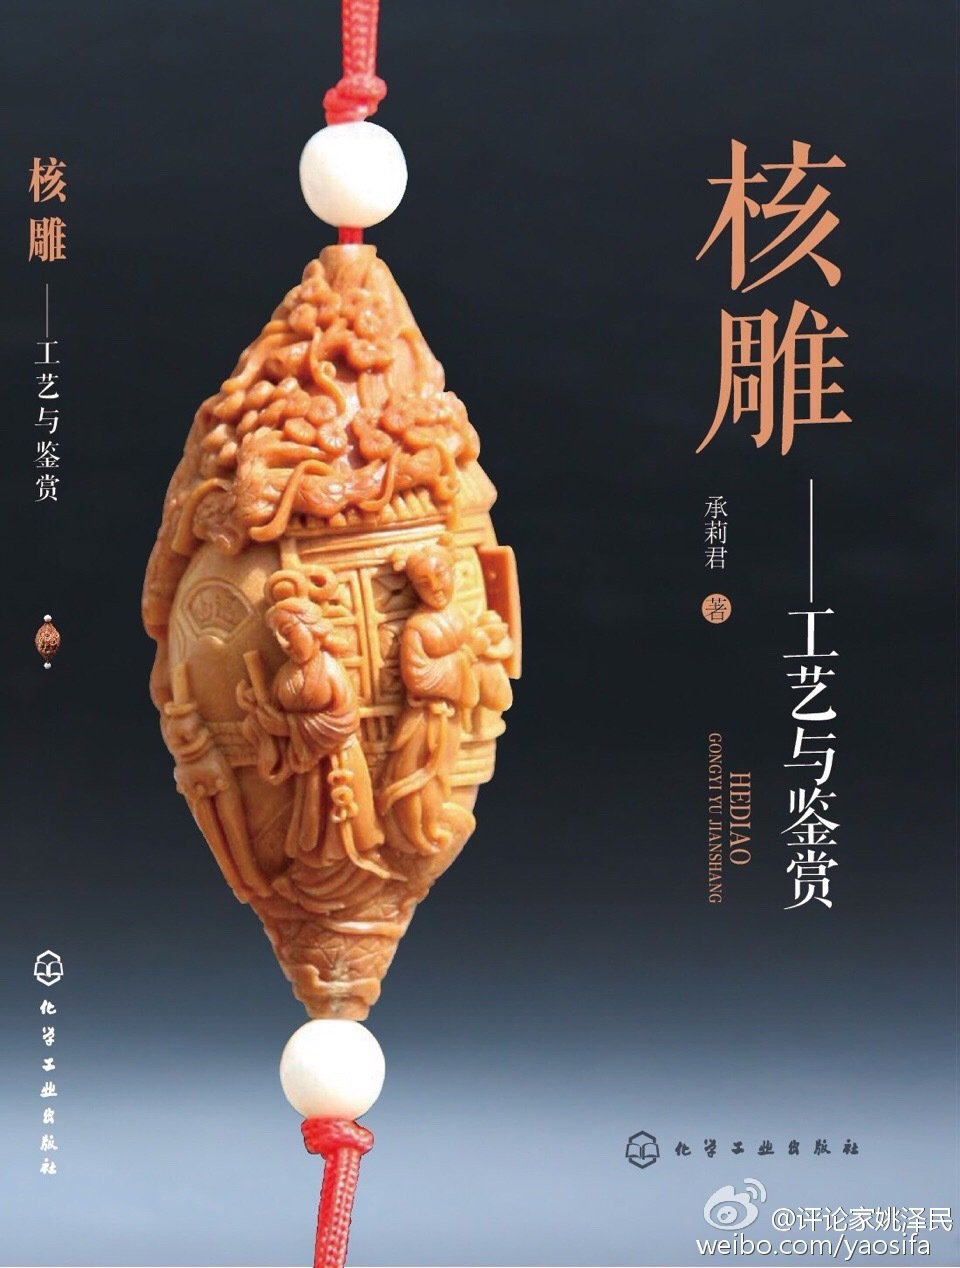 2008年,光福核雕被列入第二批国家级非物质文化遗产名录